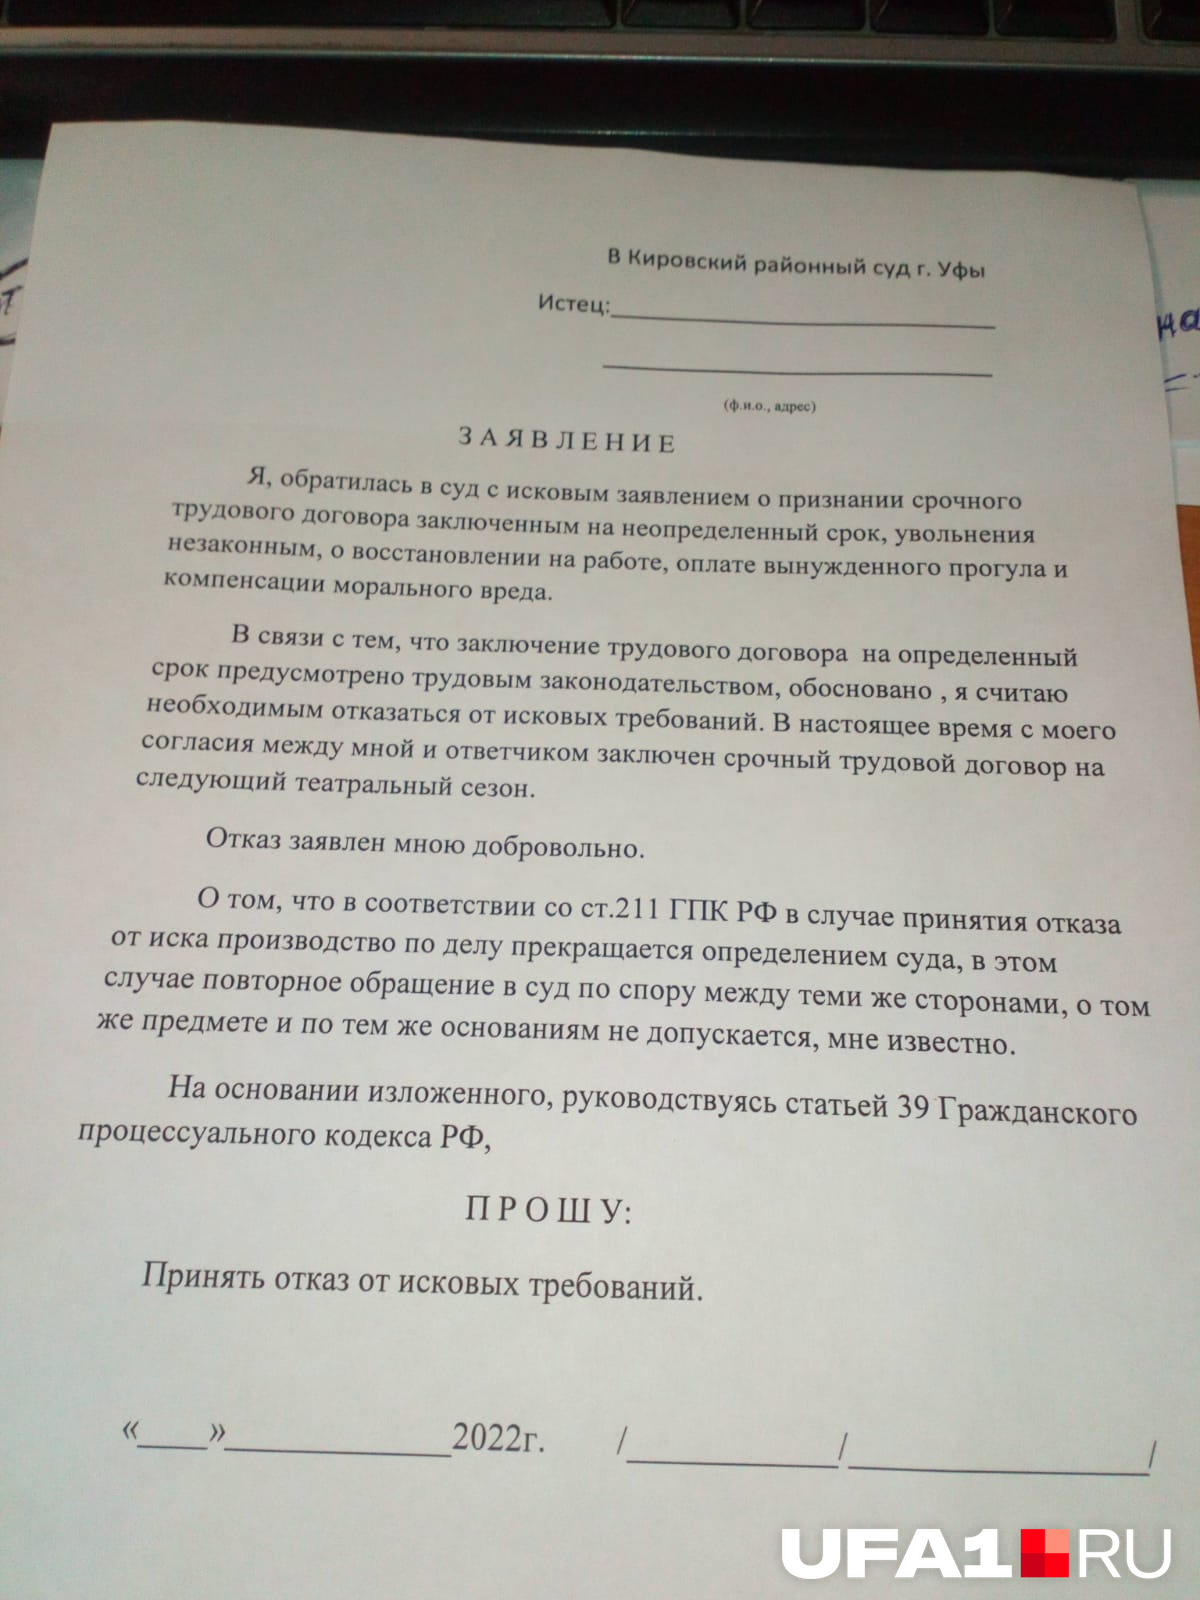 Так выглядят бланки, которые, по словам Галимовой, понуждают подписывать вернувшихся работников